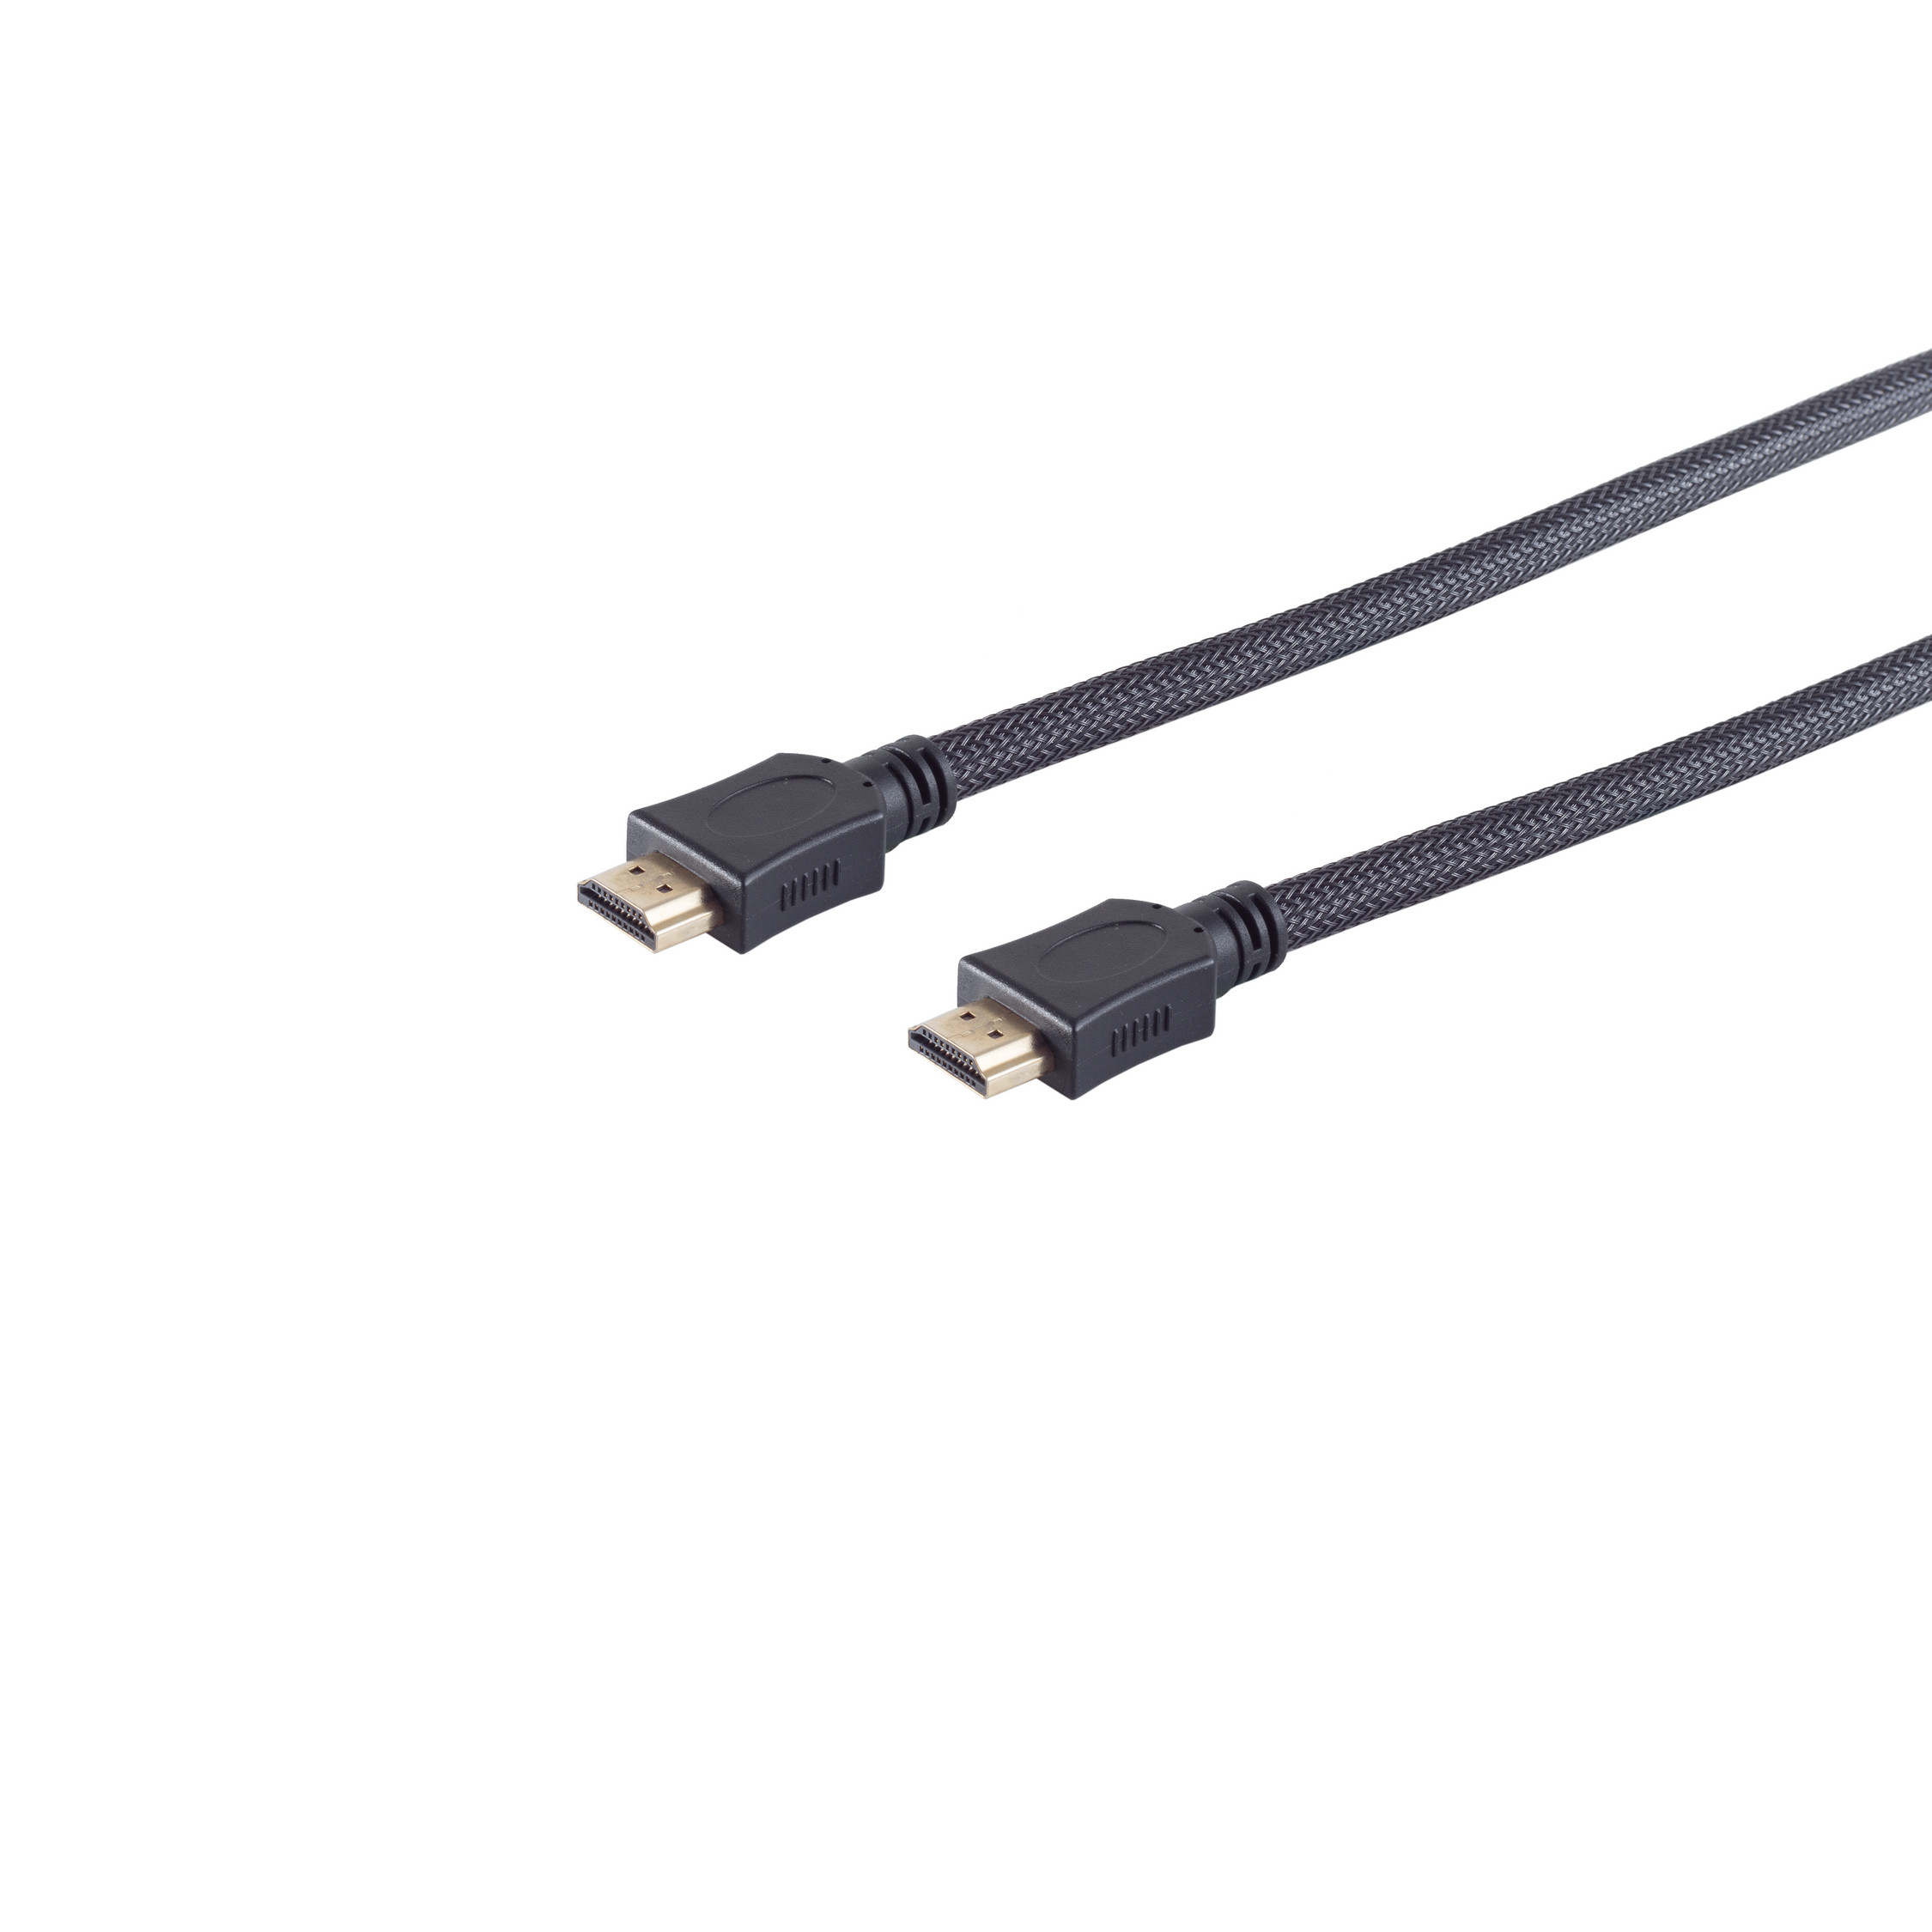 HDMI sw Kabel HEAC CONNECTIVITY A-St. 5m Nylon MAXIMUM Mantel A-St./HDMI S/CONN verg HDMI